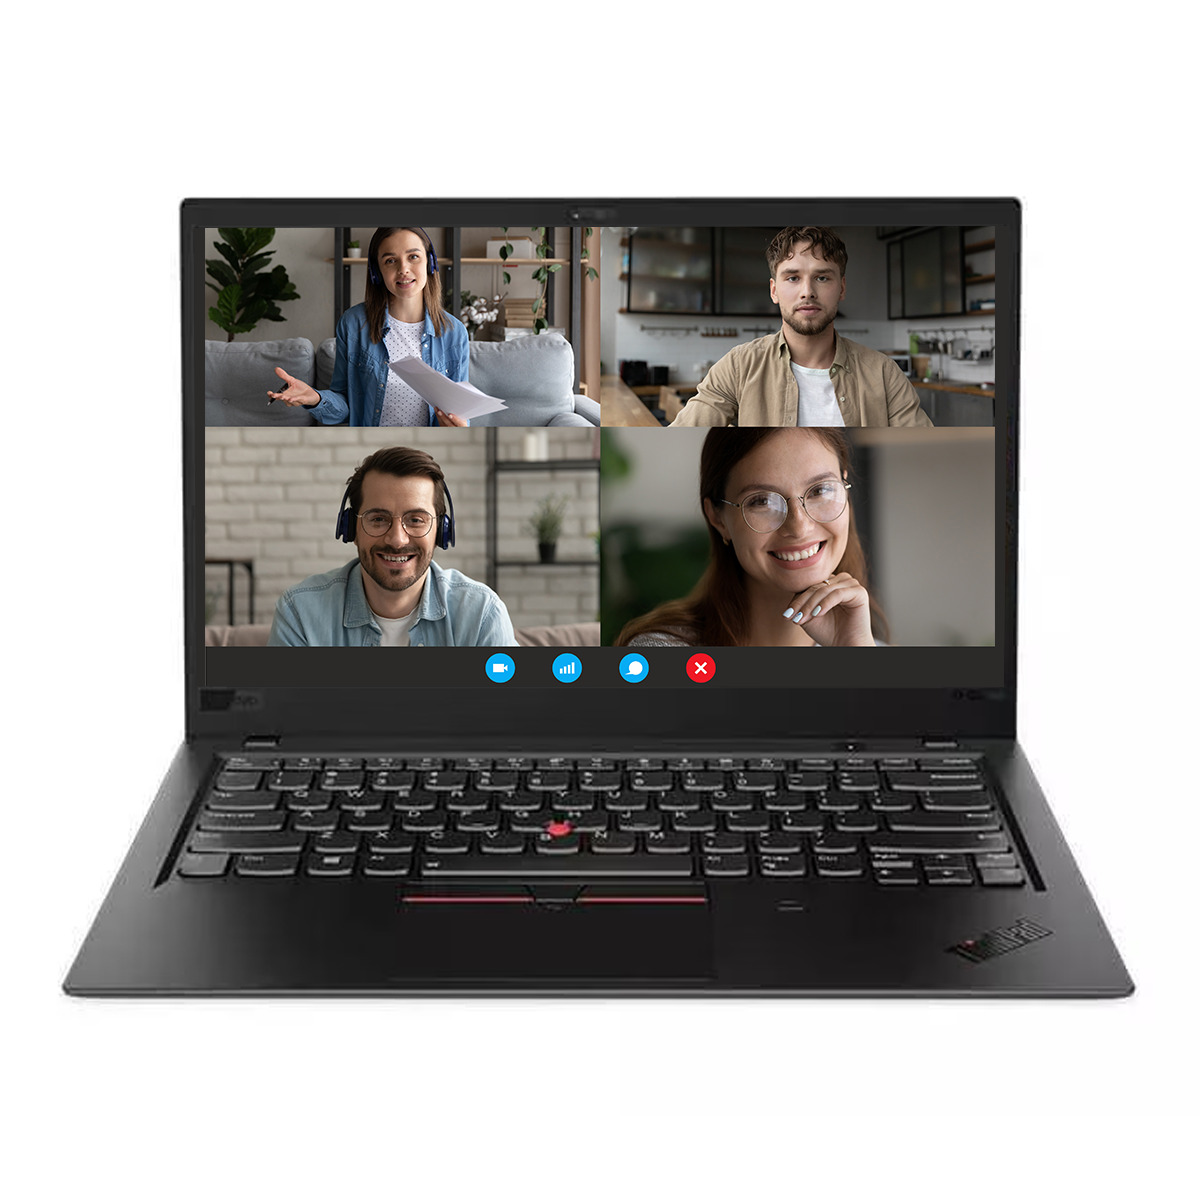 Poznaj Lenovo ThinkPad X1 Carbon G6. Ten ultracienki i lekki laptop biznesowy został stworzony z myślą o użytkownikach, którzy potrzebują niezawodnego urządzenia do pracy w podróży.  Oto kilka zalet i korzyści z pracy na Lenovo ThinkPad X1 Carbon G6:  Wydajność:  Procesor Intel Core i7-8550u ósmej generacji zapewnia płynną pracę nawet przy wymagających zadaniach. 16 GB pamięci RAM umożliwia wielozadaniowość bez obniżania wydajności. Szybki dysk SSD o pojemności 256 GB zapewnia błyskawiczny czas rozruchu i transferu danych. Mobilność:  Ważący zaledwie 1,13 kg laptop jest łatwy do przenoszenia w podróży. Długi czas pracy na baterii (do 18 godzin) pozwala na pracę przez cały dzień bez konieczności ładowania. Wytrzymała konstrukcja z włókna węglowego zapewnia odporność na uderzenia i wstrząsy. Komfort użytkowania:  Podświetlana klawiatura ThinkPad zapewnia wygodne pisanie nawet w ciemności. Ekran o przekątnej 14,1 cala i rozdzielczości Full HD zapewnia ostry i wyraźny obraz. Szeroki zakres portów (w tym Thunderbolt 3) umożliwia podłączenie wszystkich niezbędnych urządzeń peryferyjnych.